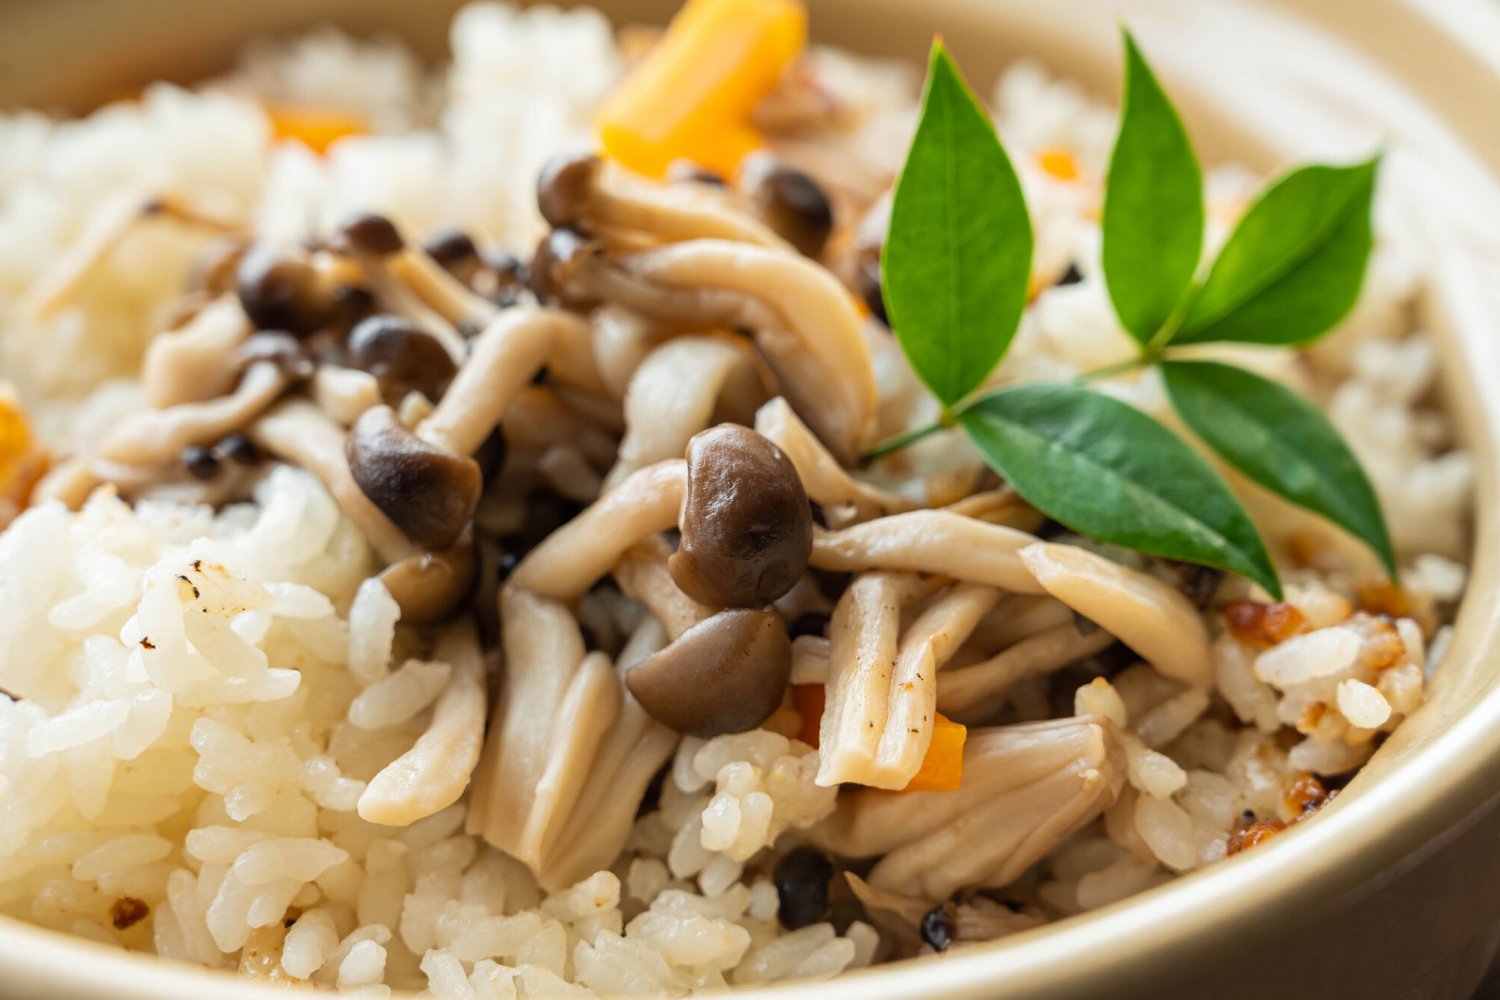 米類・米飯及び関連品